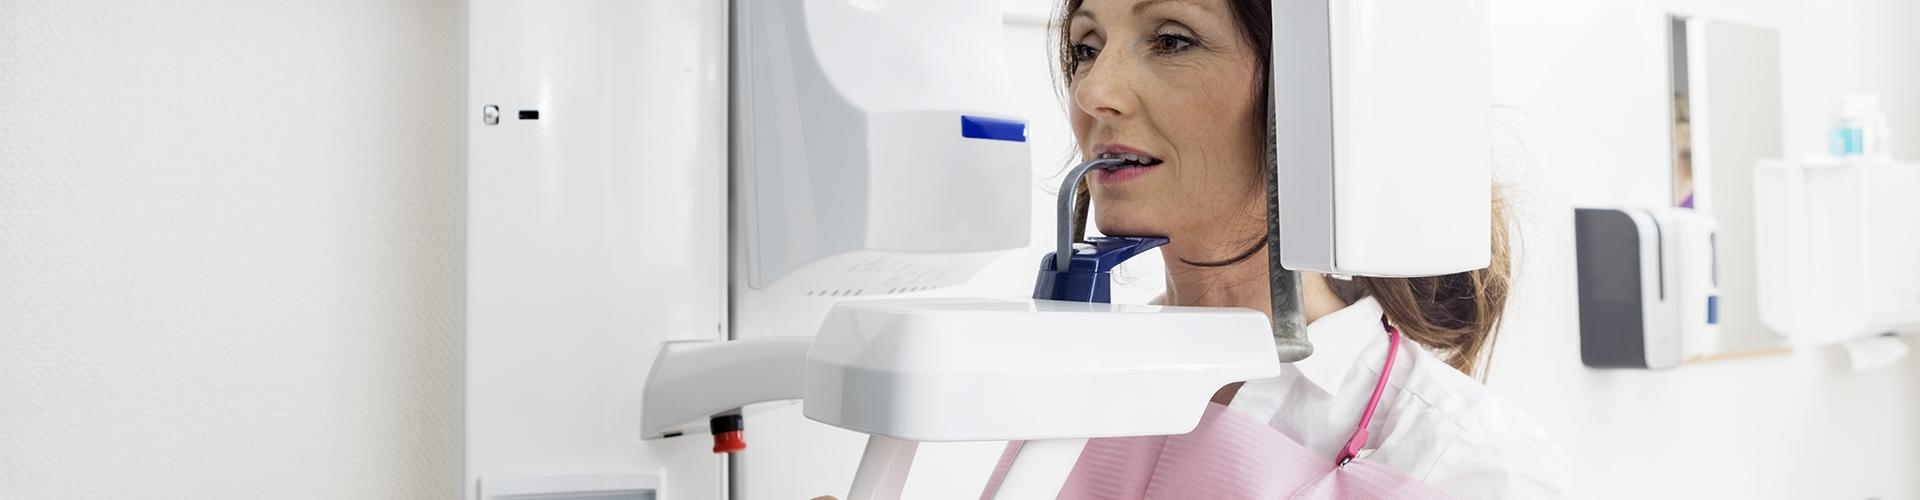 Panoráma röntgen fontossága a fogászatban